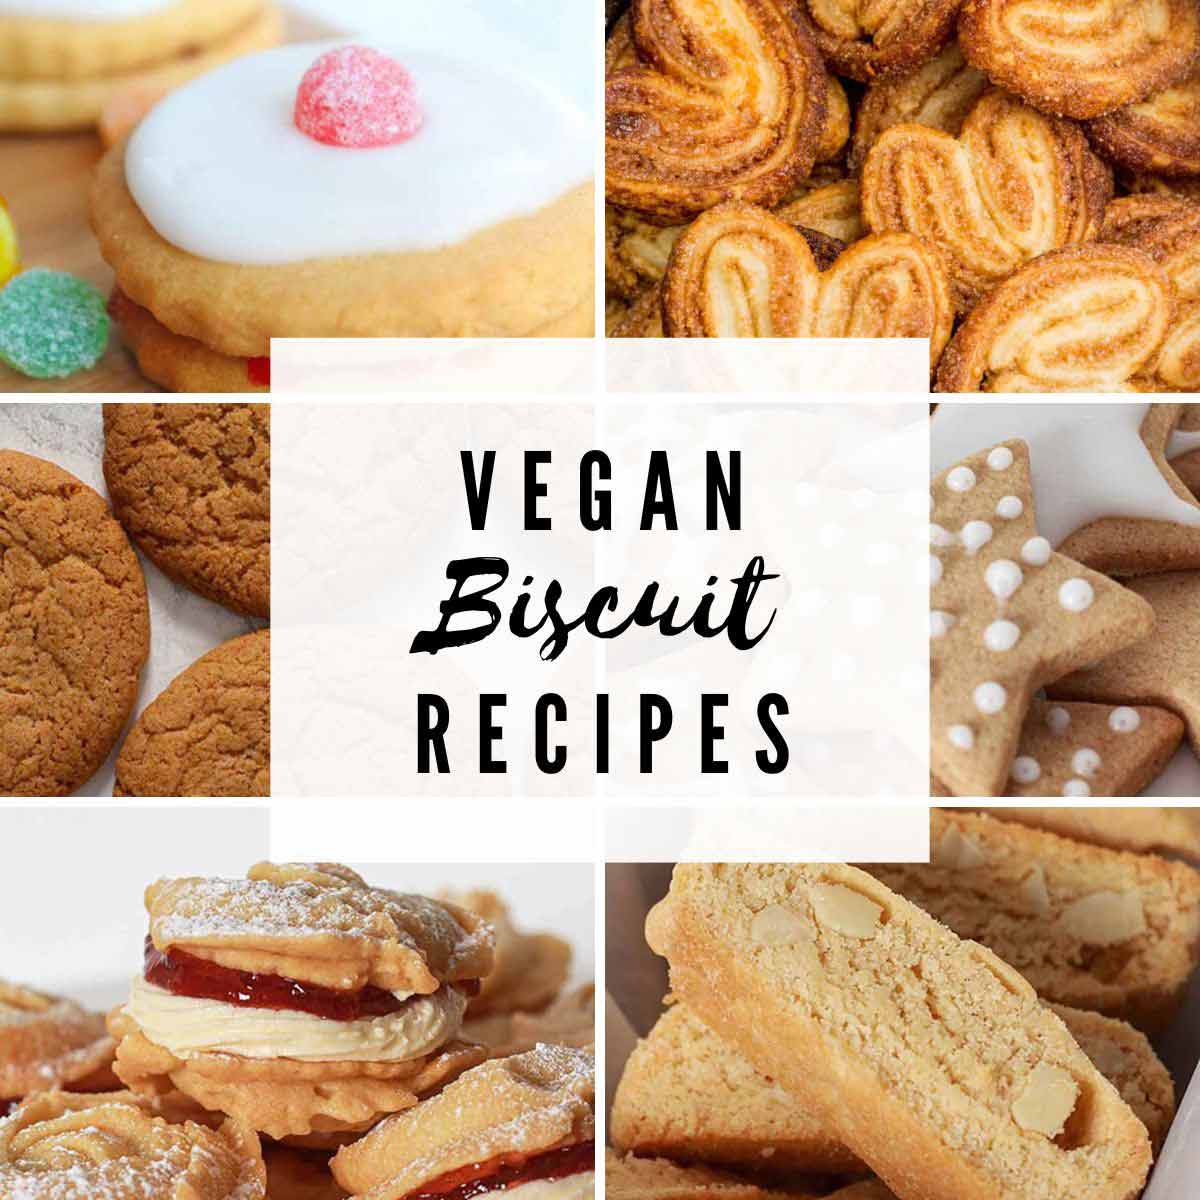 6 Images Of Vegan Biscuits